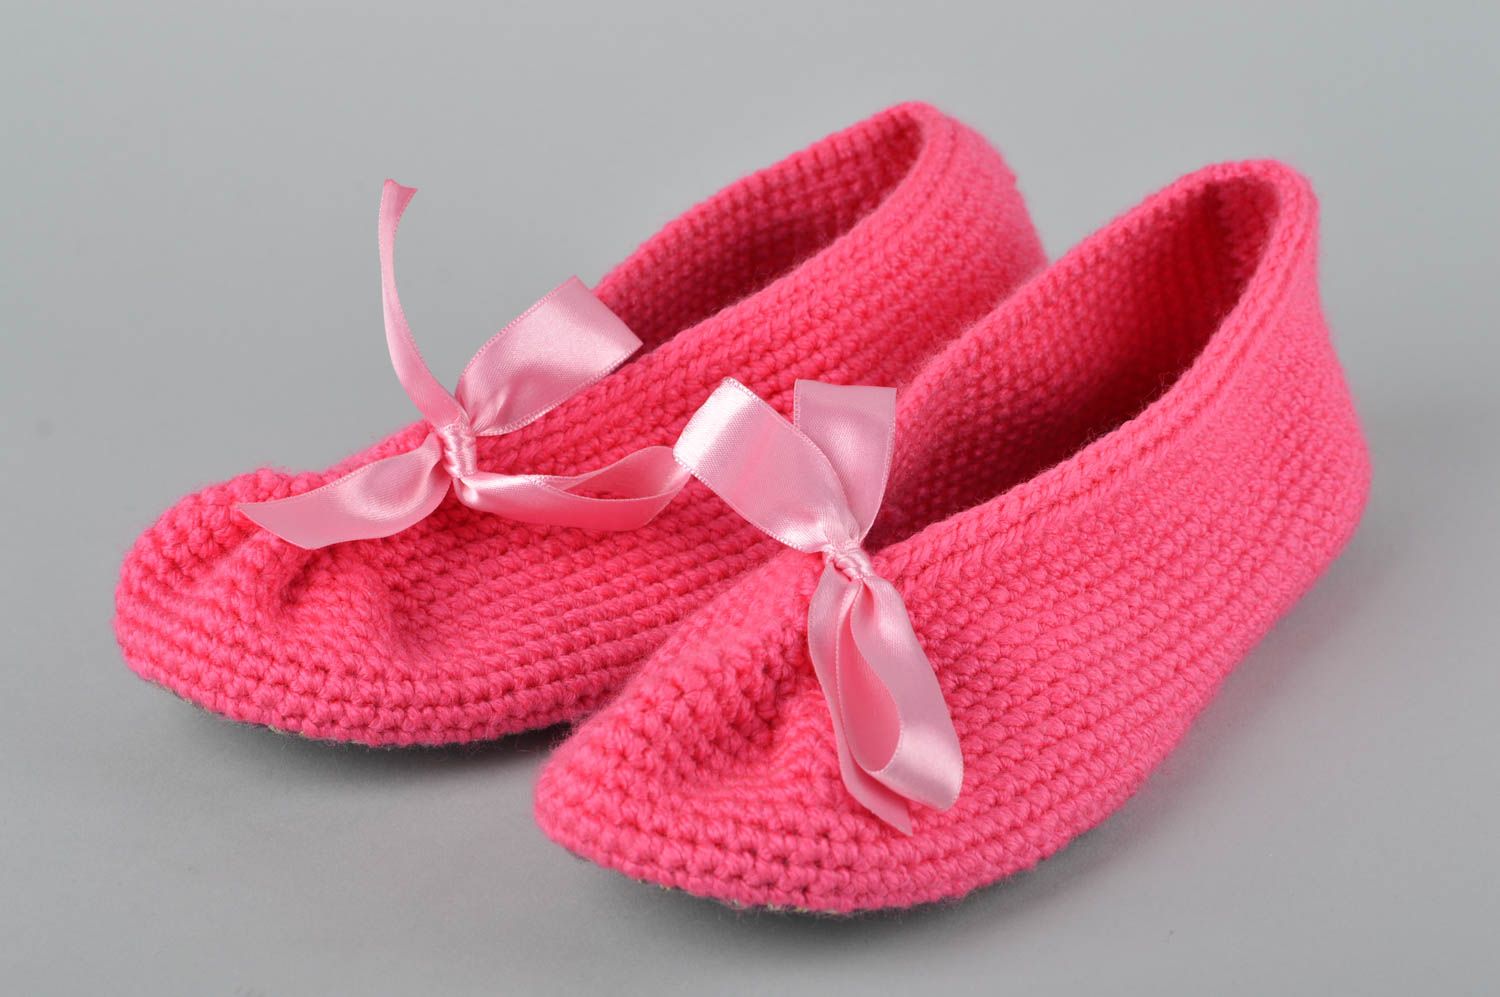 Handmade slippers ballet shoes crochet slippers crochet house shoes gift for her photo 1